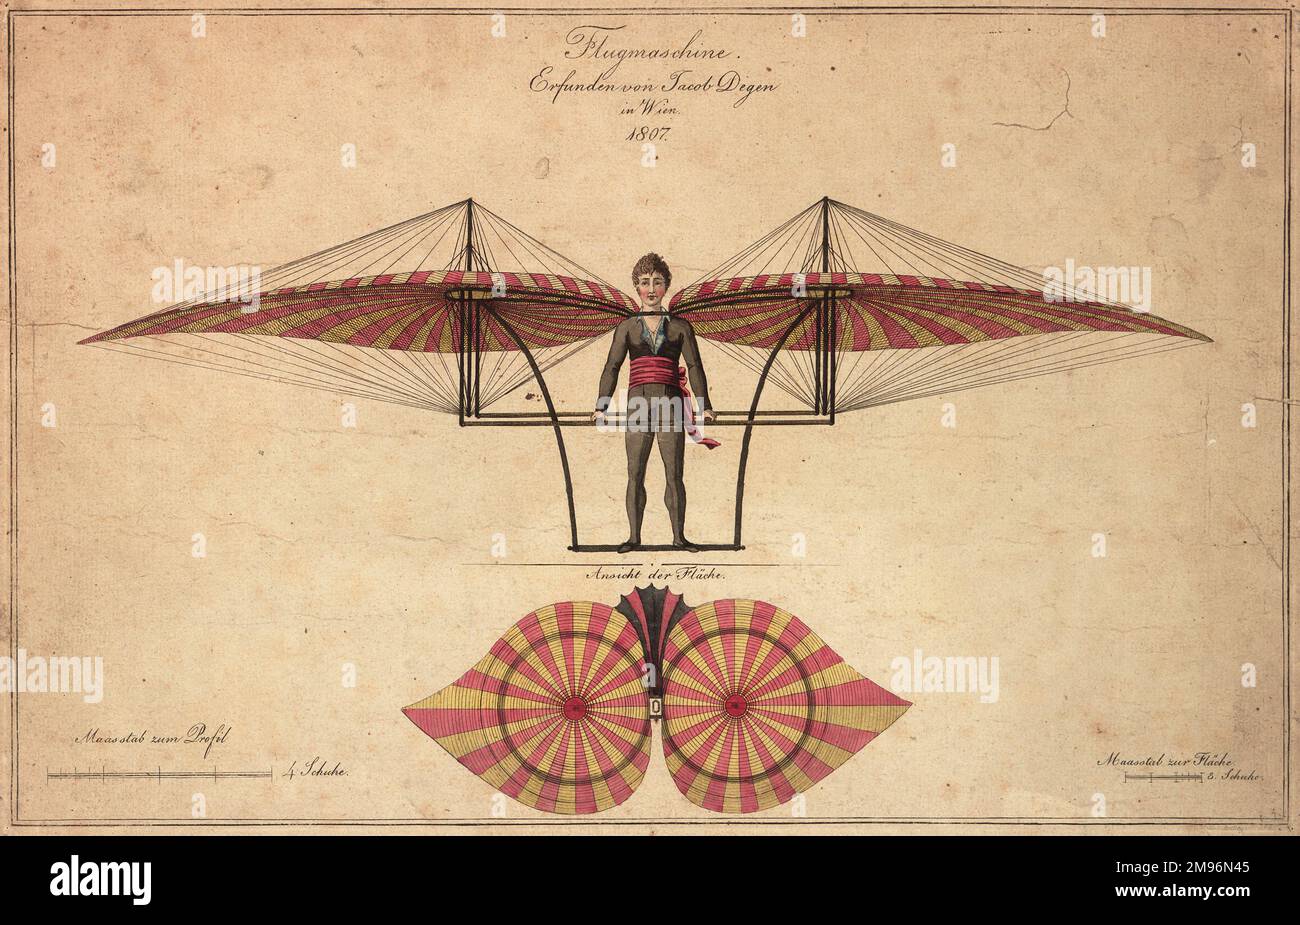 Un primo progetto di macchina volante, che mostra un uomo in piedi in un assieme alato simile a un parapendio. Progettato da Jacob Degen, Vienna, 1807, con le misurazioni riportate di seguito. Foto Stock